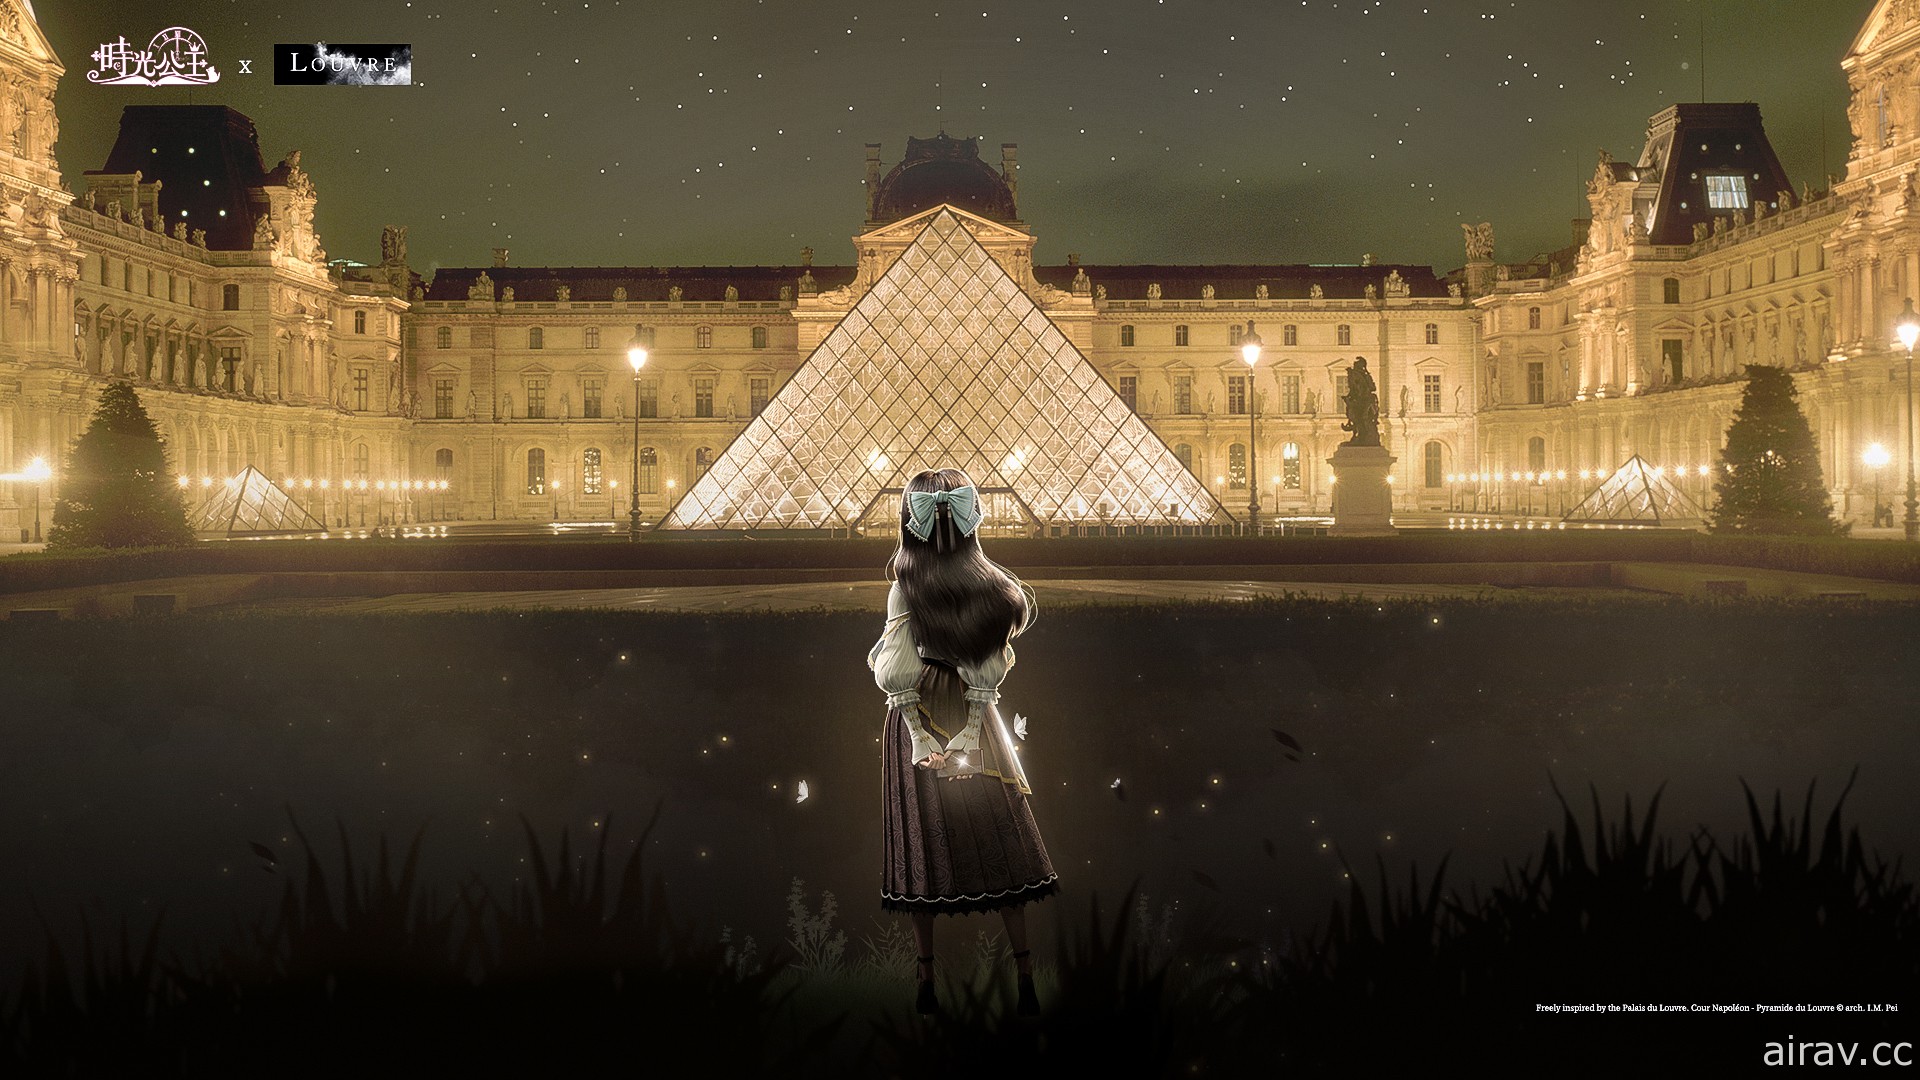 参观罗浮宫不用去法国 《时光公主》x《罗浮宫 Louvre》跨界联动正式展开